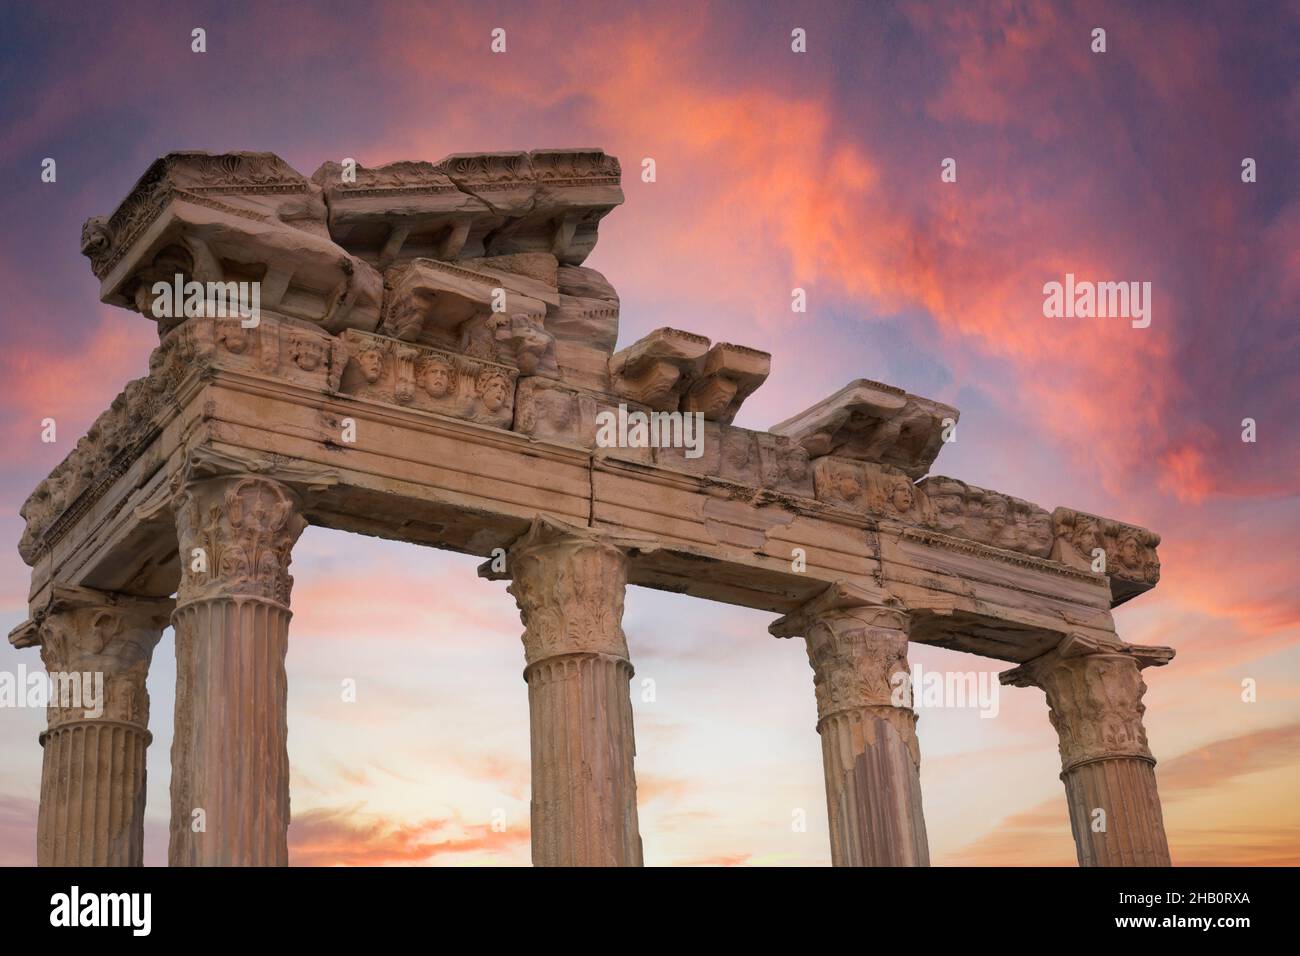 El Templo de Apolo es un templo romano construido alrededor del año 150 d.C. en la costa del Mar Mediterráneo. Lado Antalya Turquía. Puesta de sol clima nublado. Selectivo Foto de stock